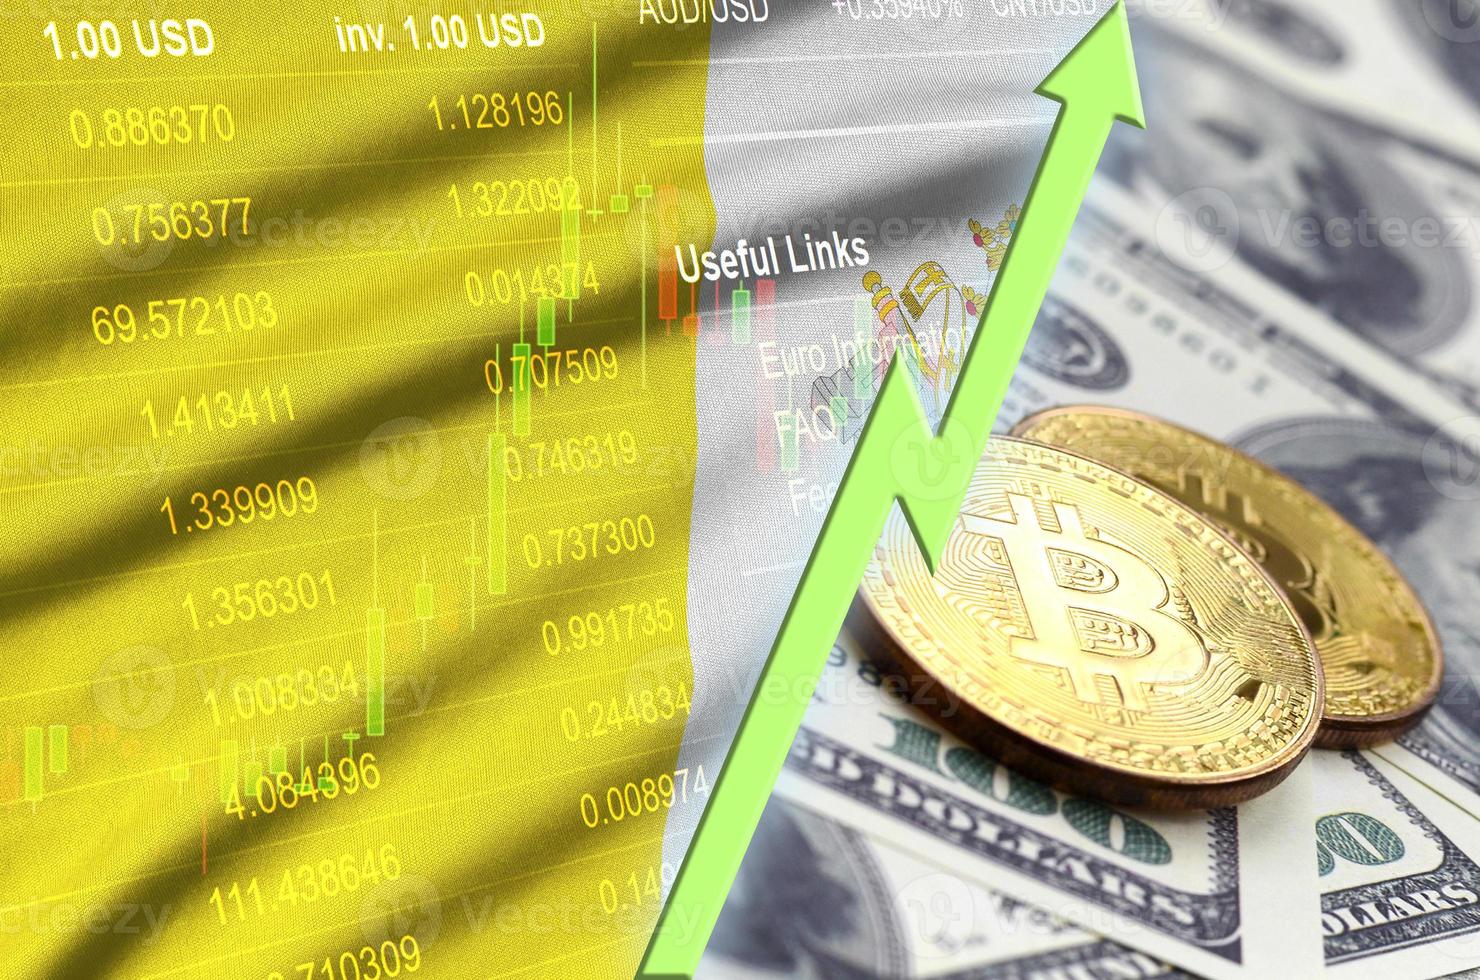 drapeau d'état de la cité du vatican et tendance croissante de la crypto-monnaie avec deux bitcoins sur des billets d'un dollar photo